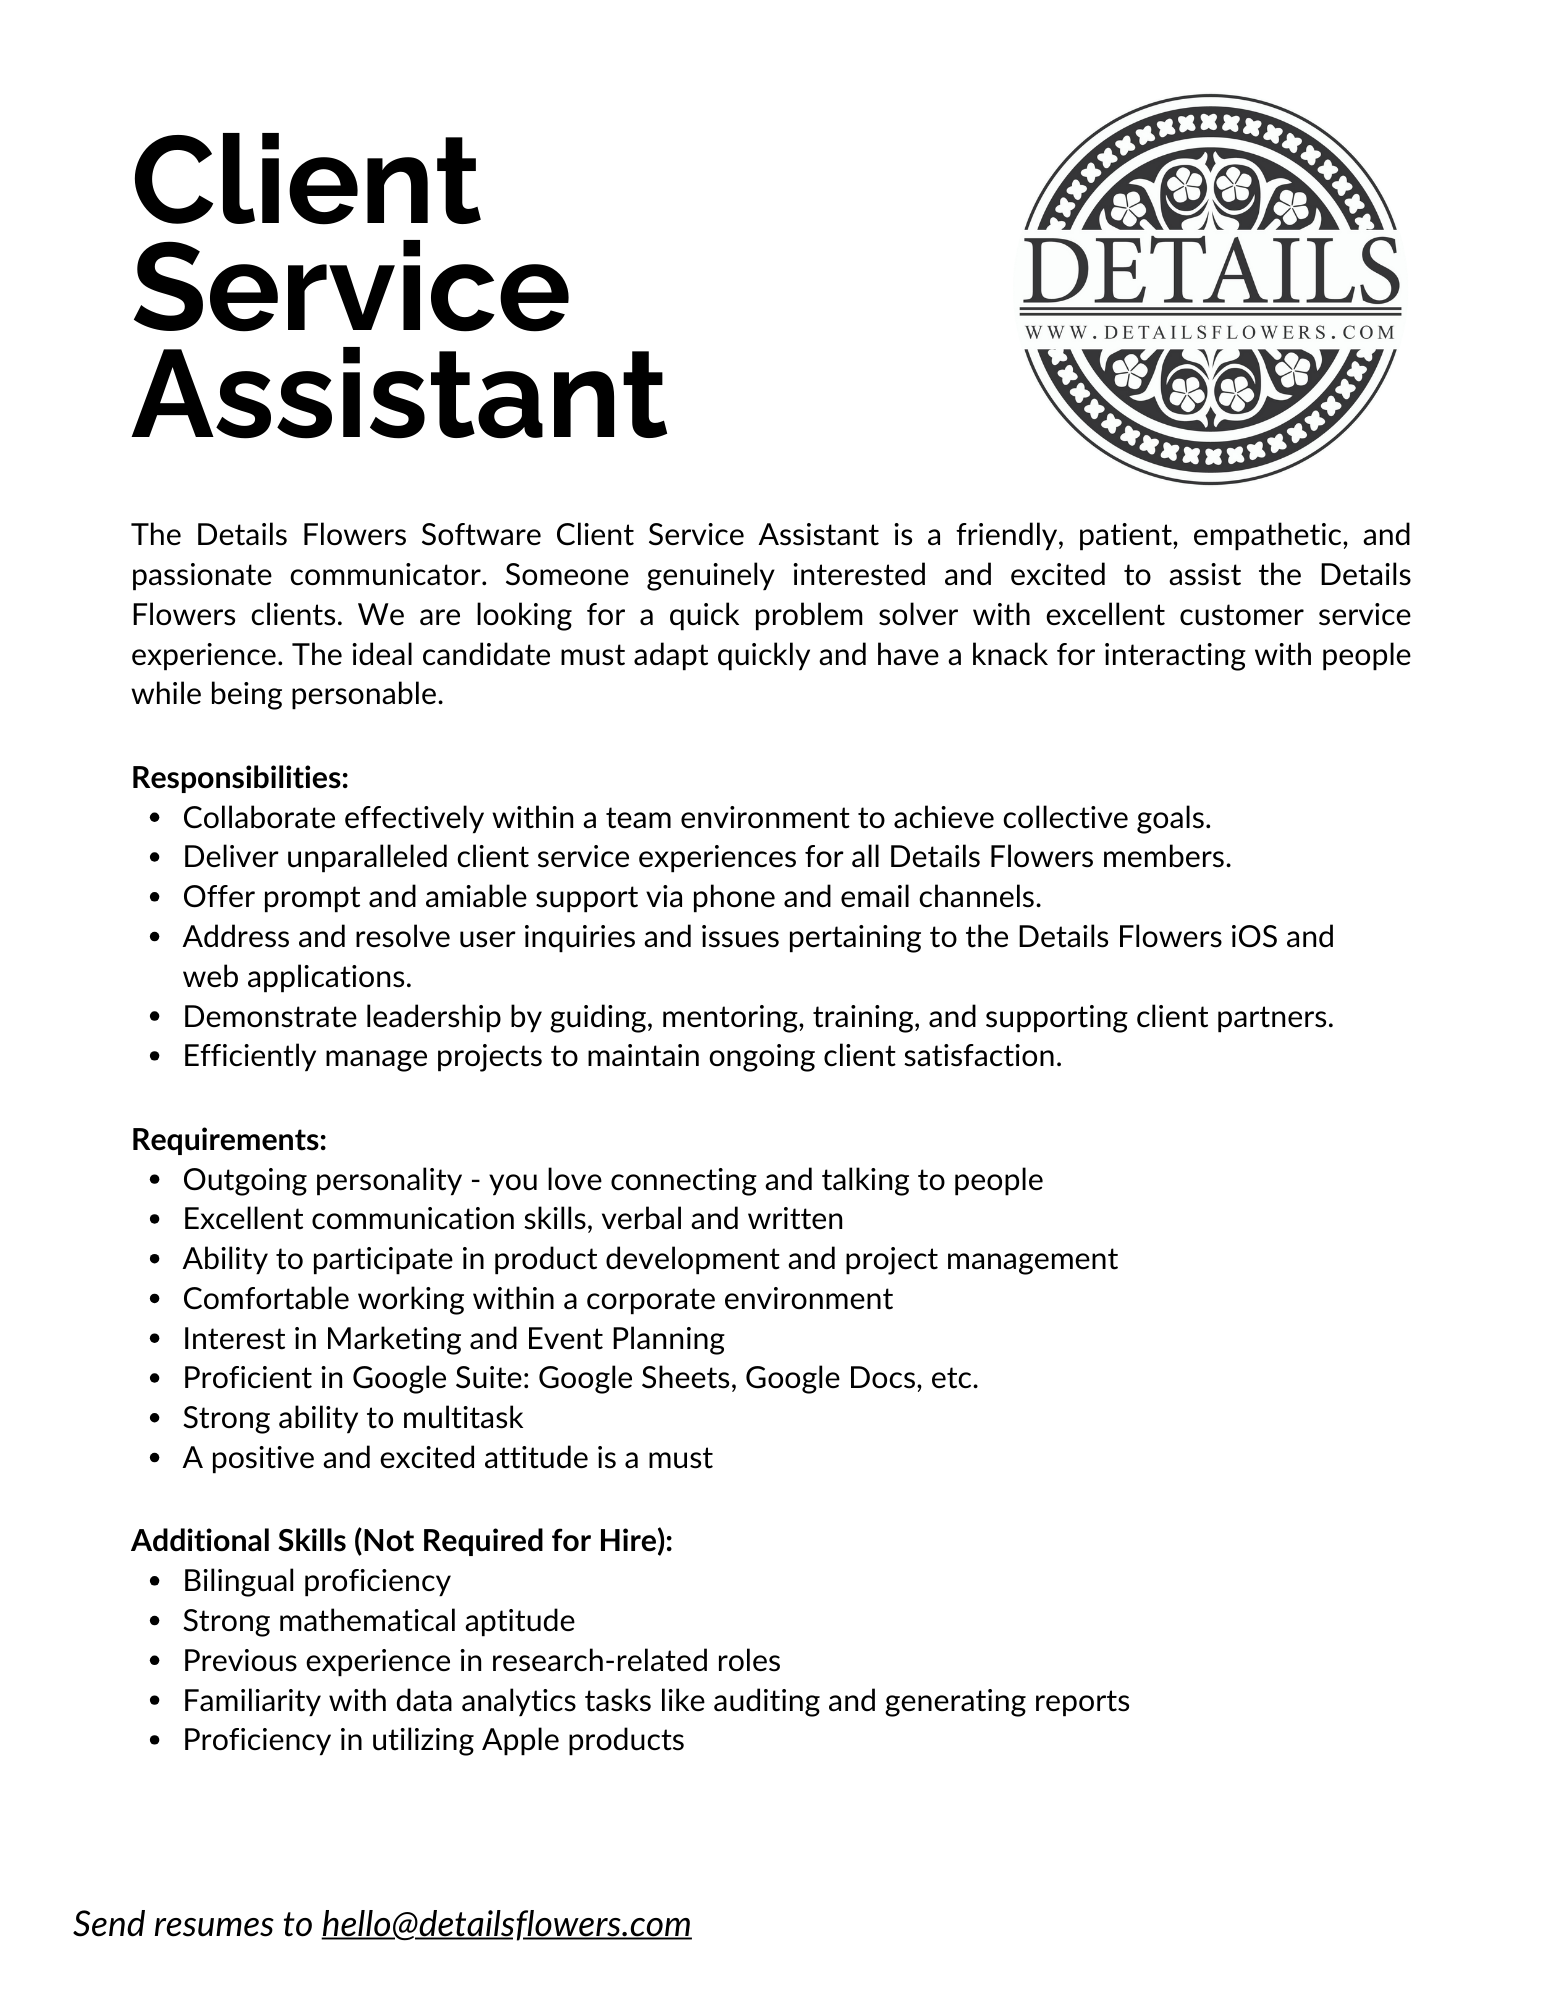 Client Service Assistant